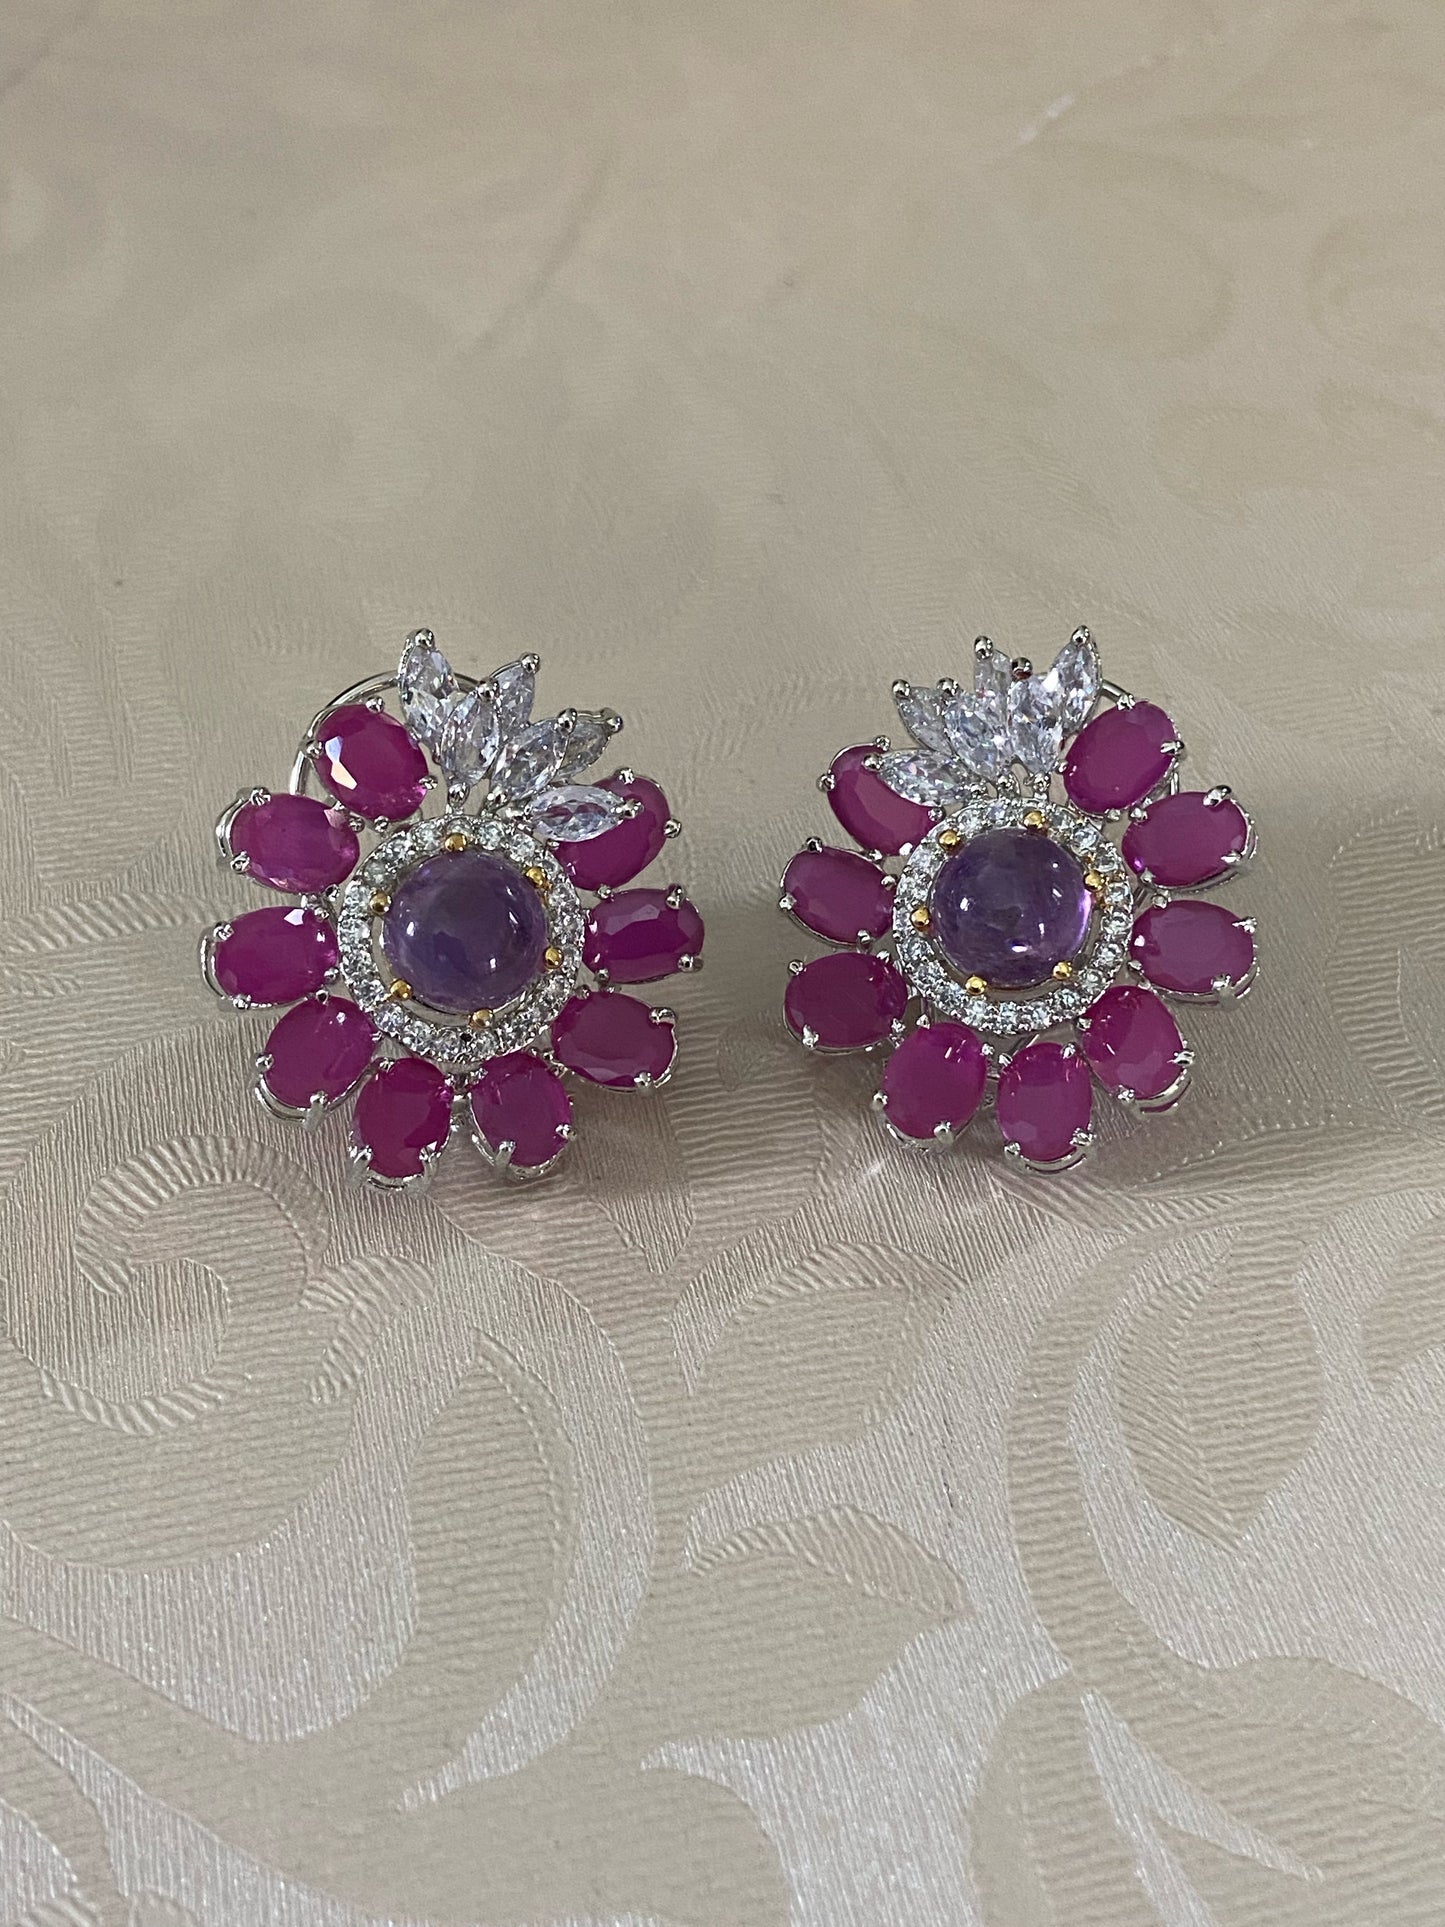 Semi precious stones earrings | Indian jewelry in USA